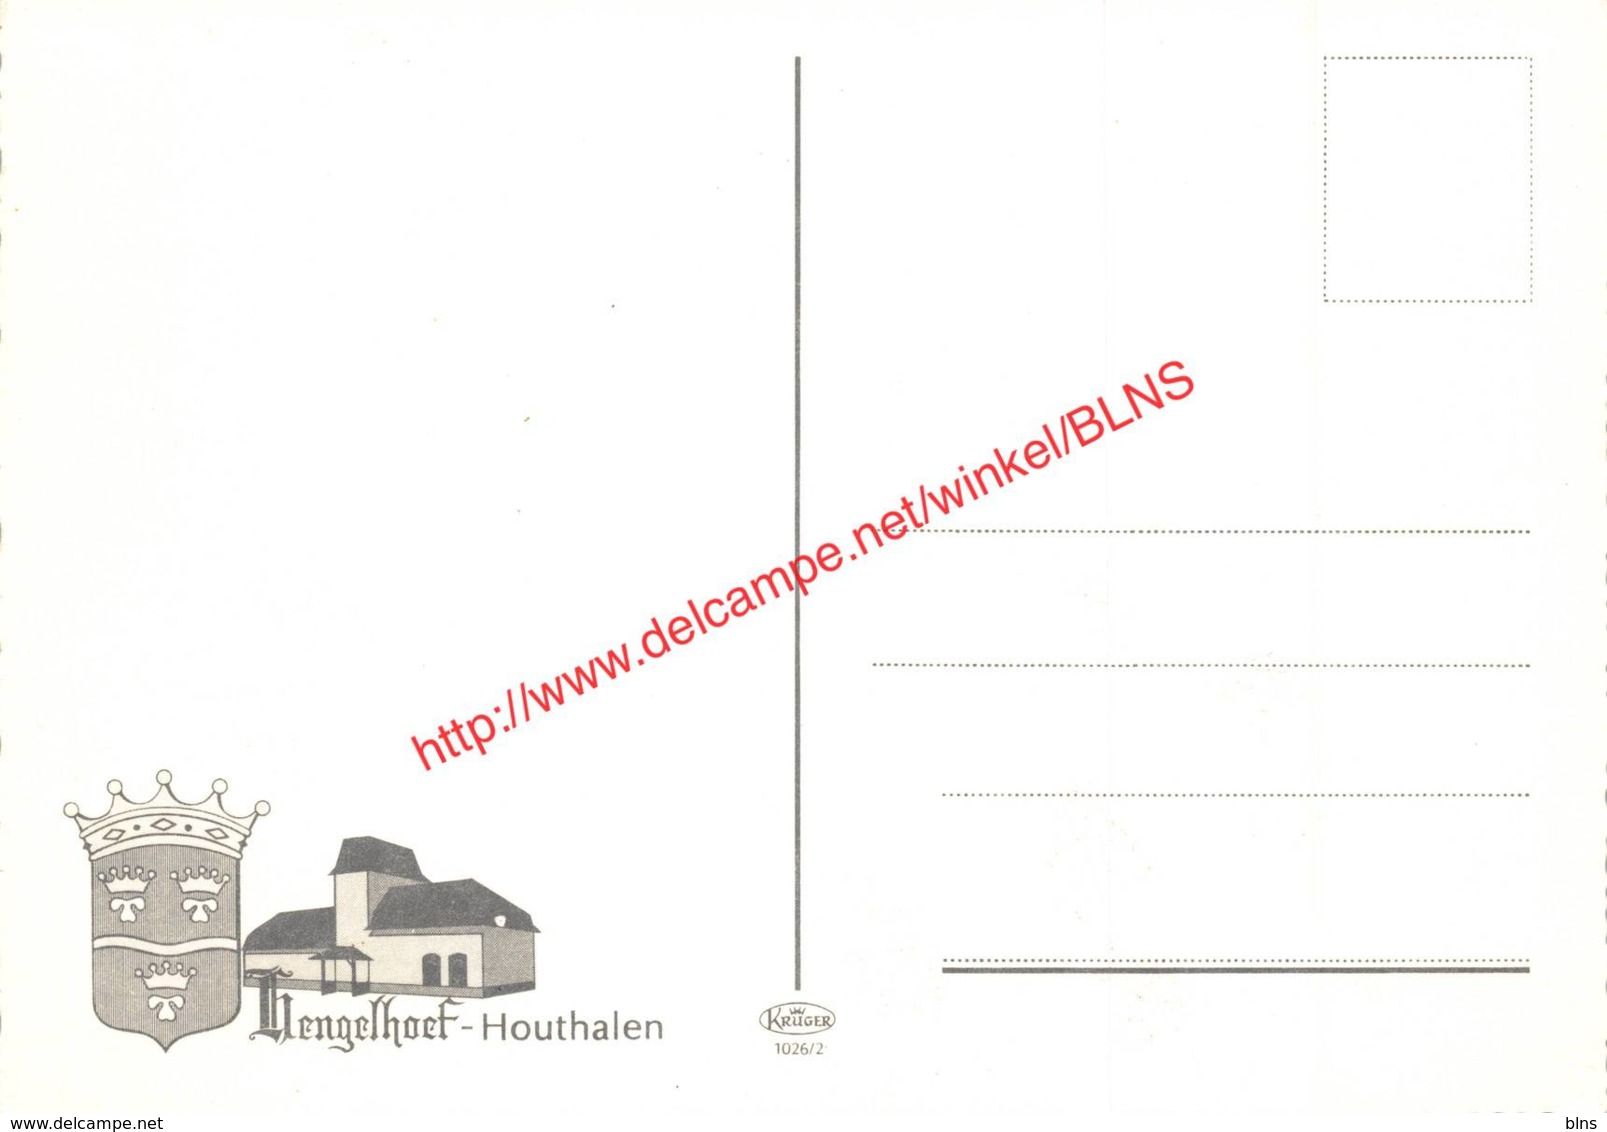 Hengelhoef - Houthalen - Houthalen-Helchteren